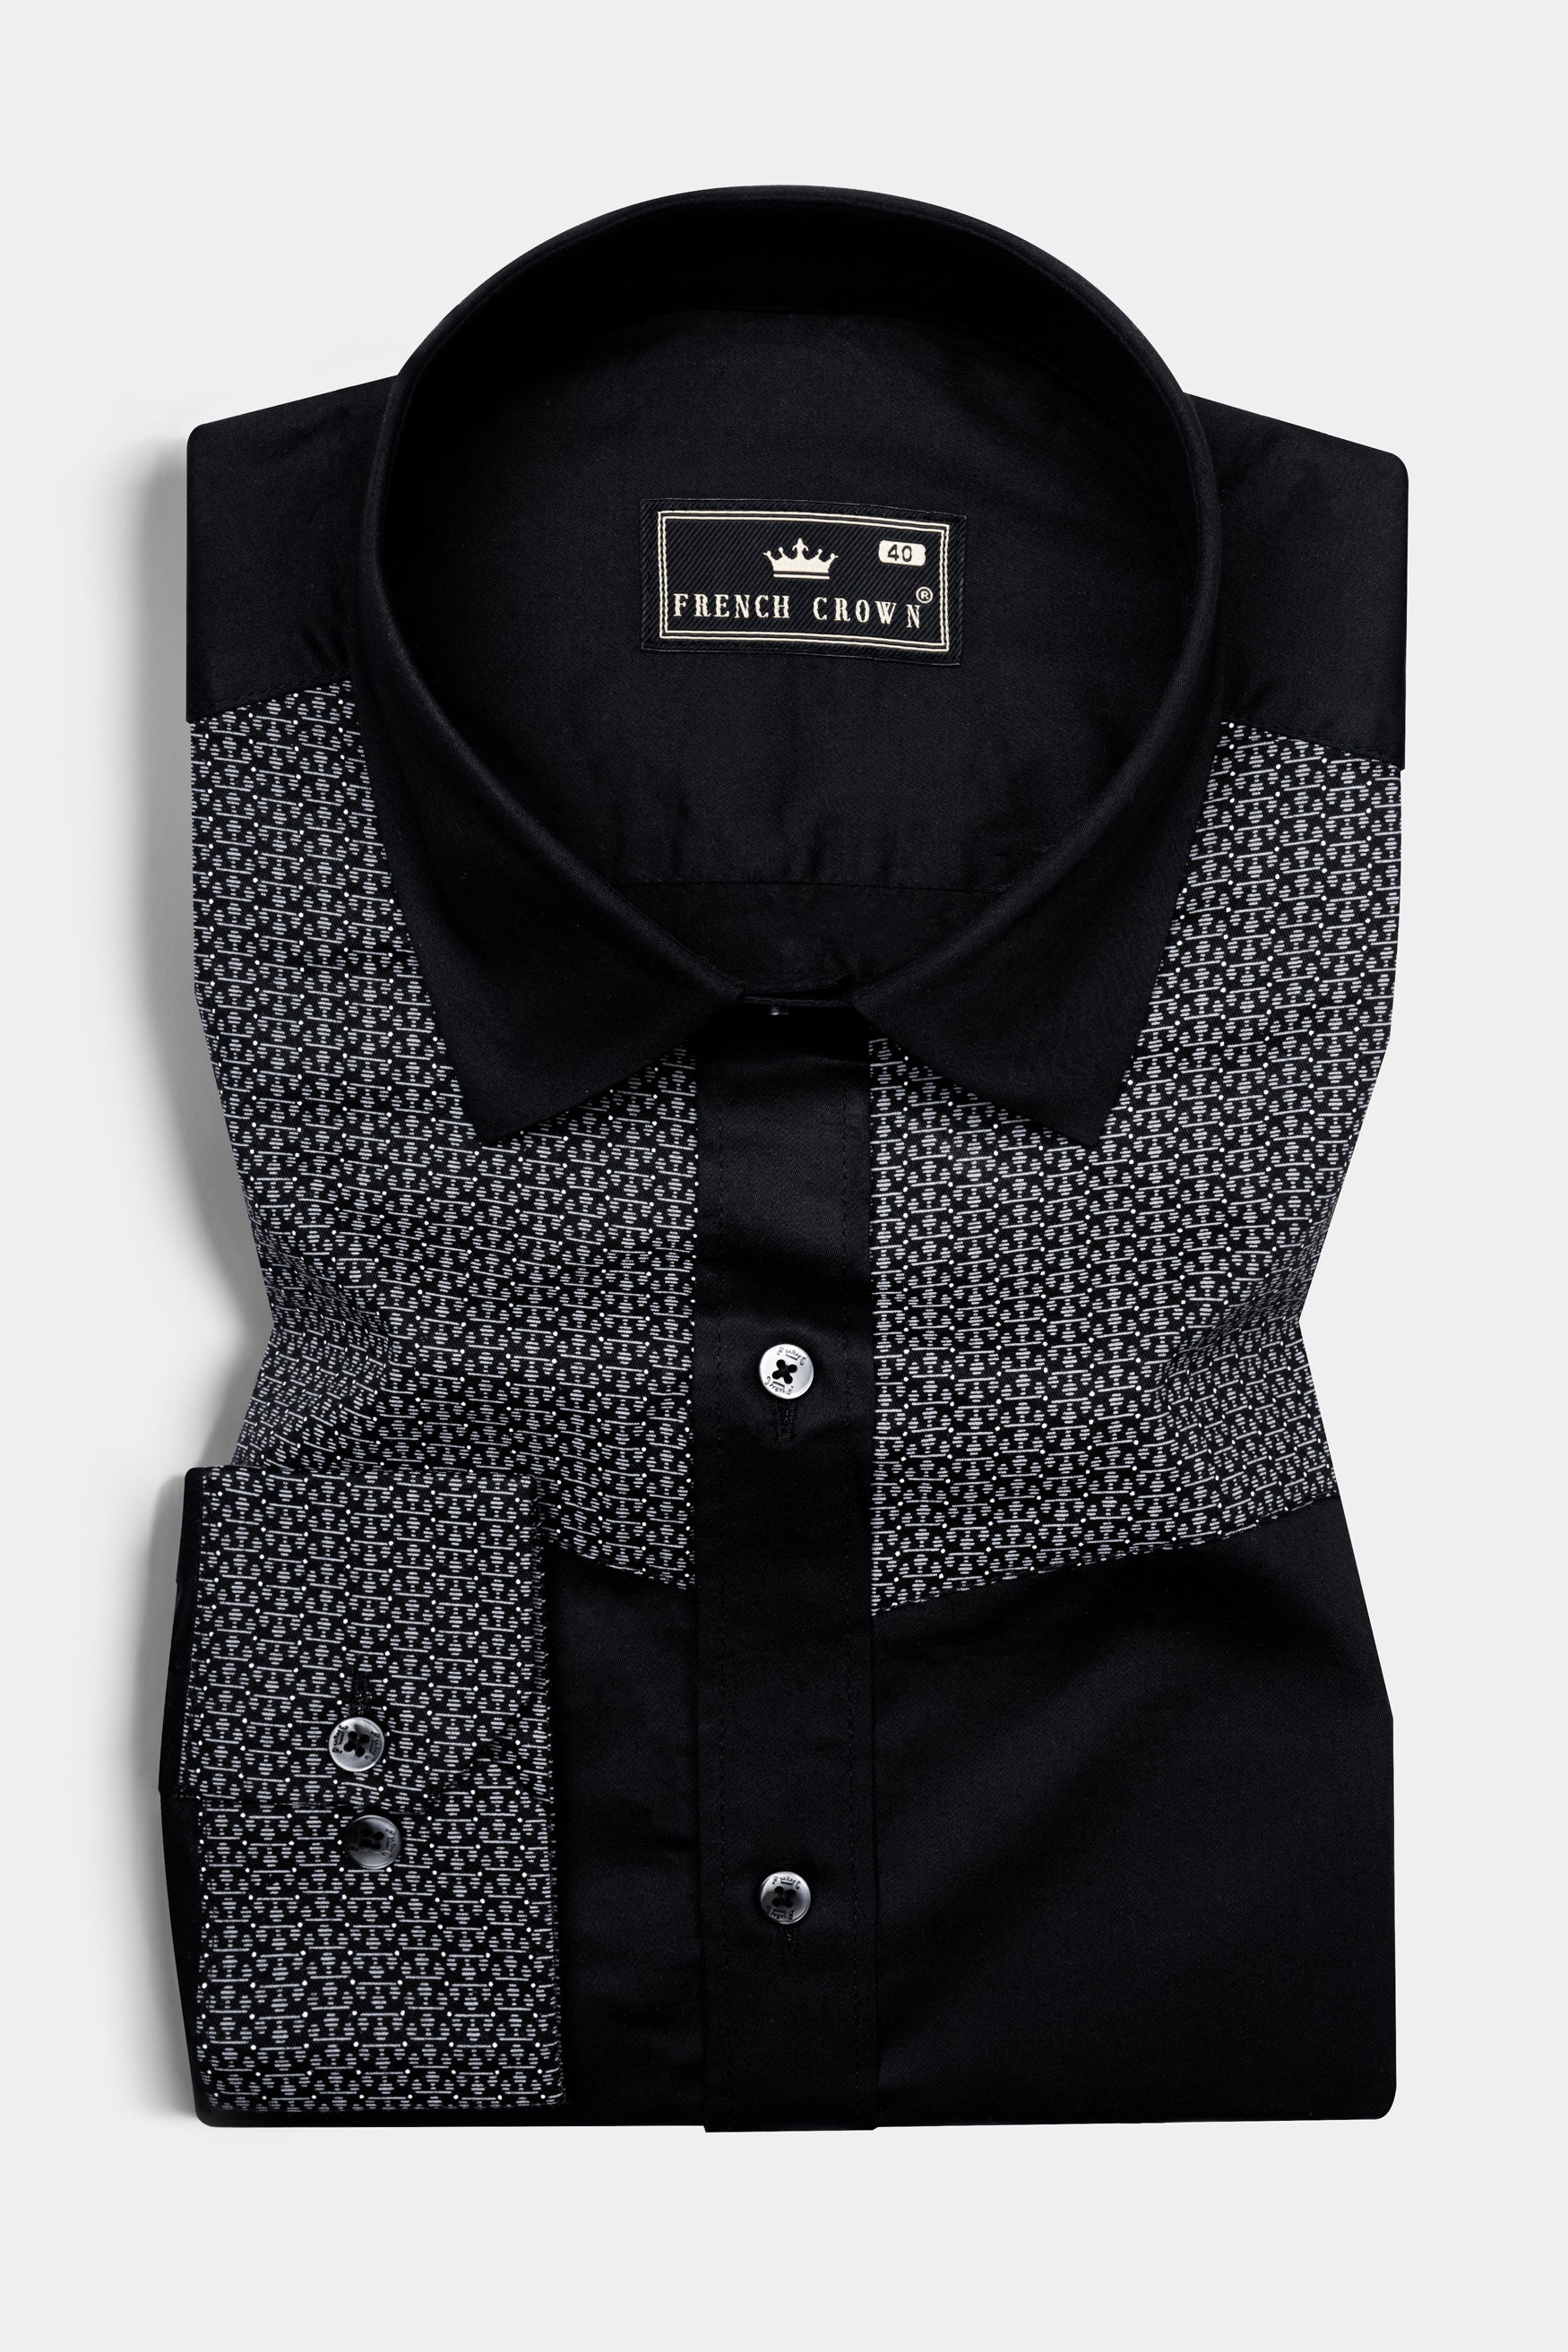 Jade Black Super Soft Premium Cotton Designer Shirt